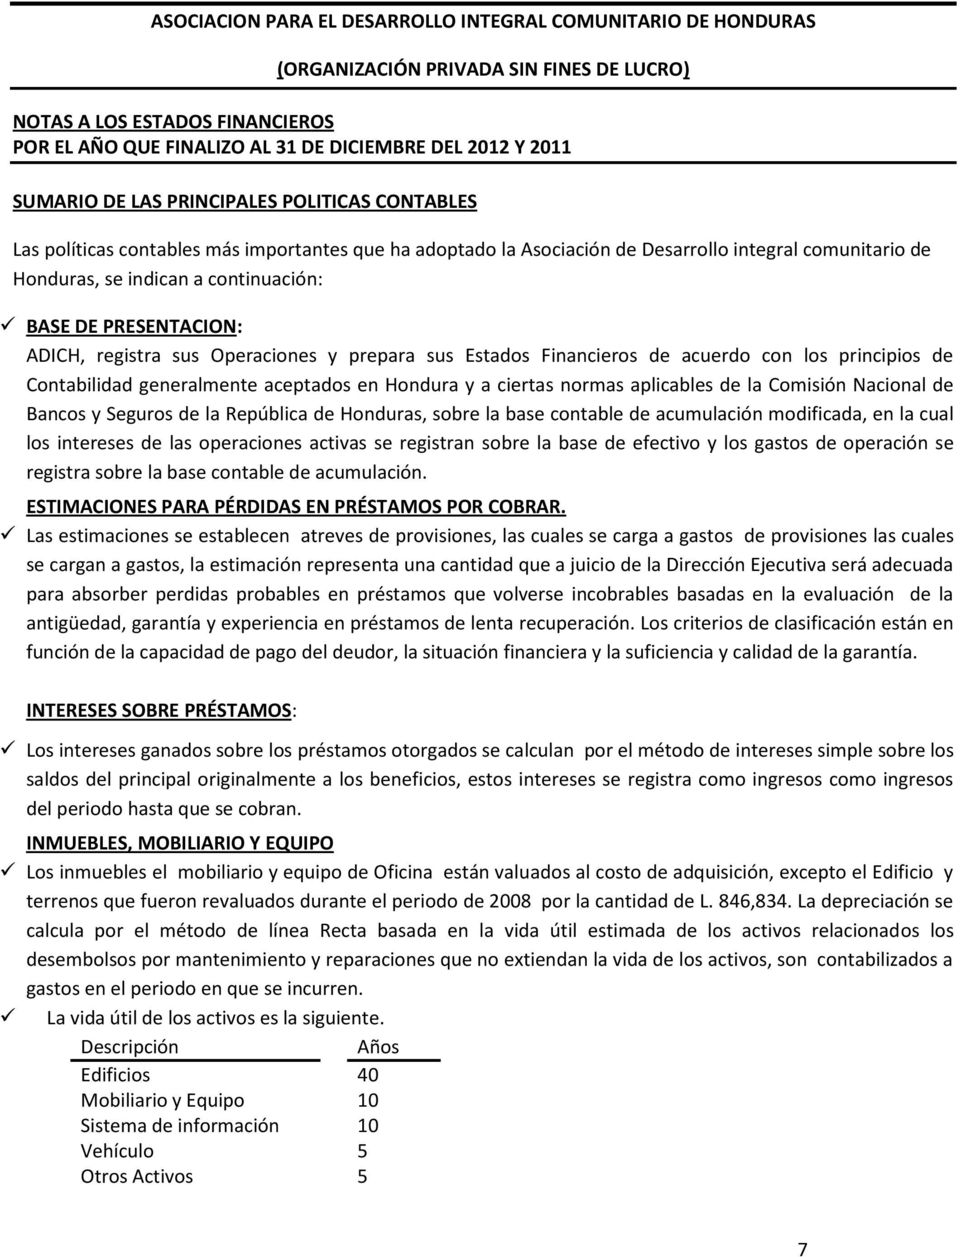 Comisión Nacional de Bancos y Seguros de la República de Honduras, sobre la base contable de acumulación modificada, en la cual los intereses de las operaciones activas se registran sobre la base de